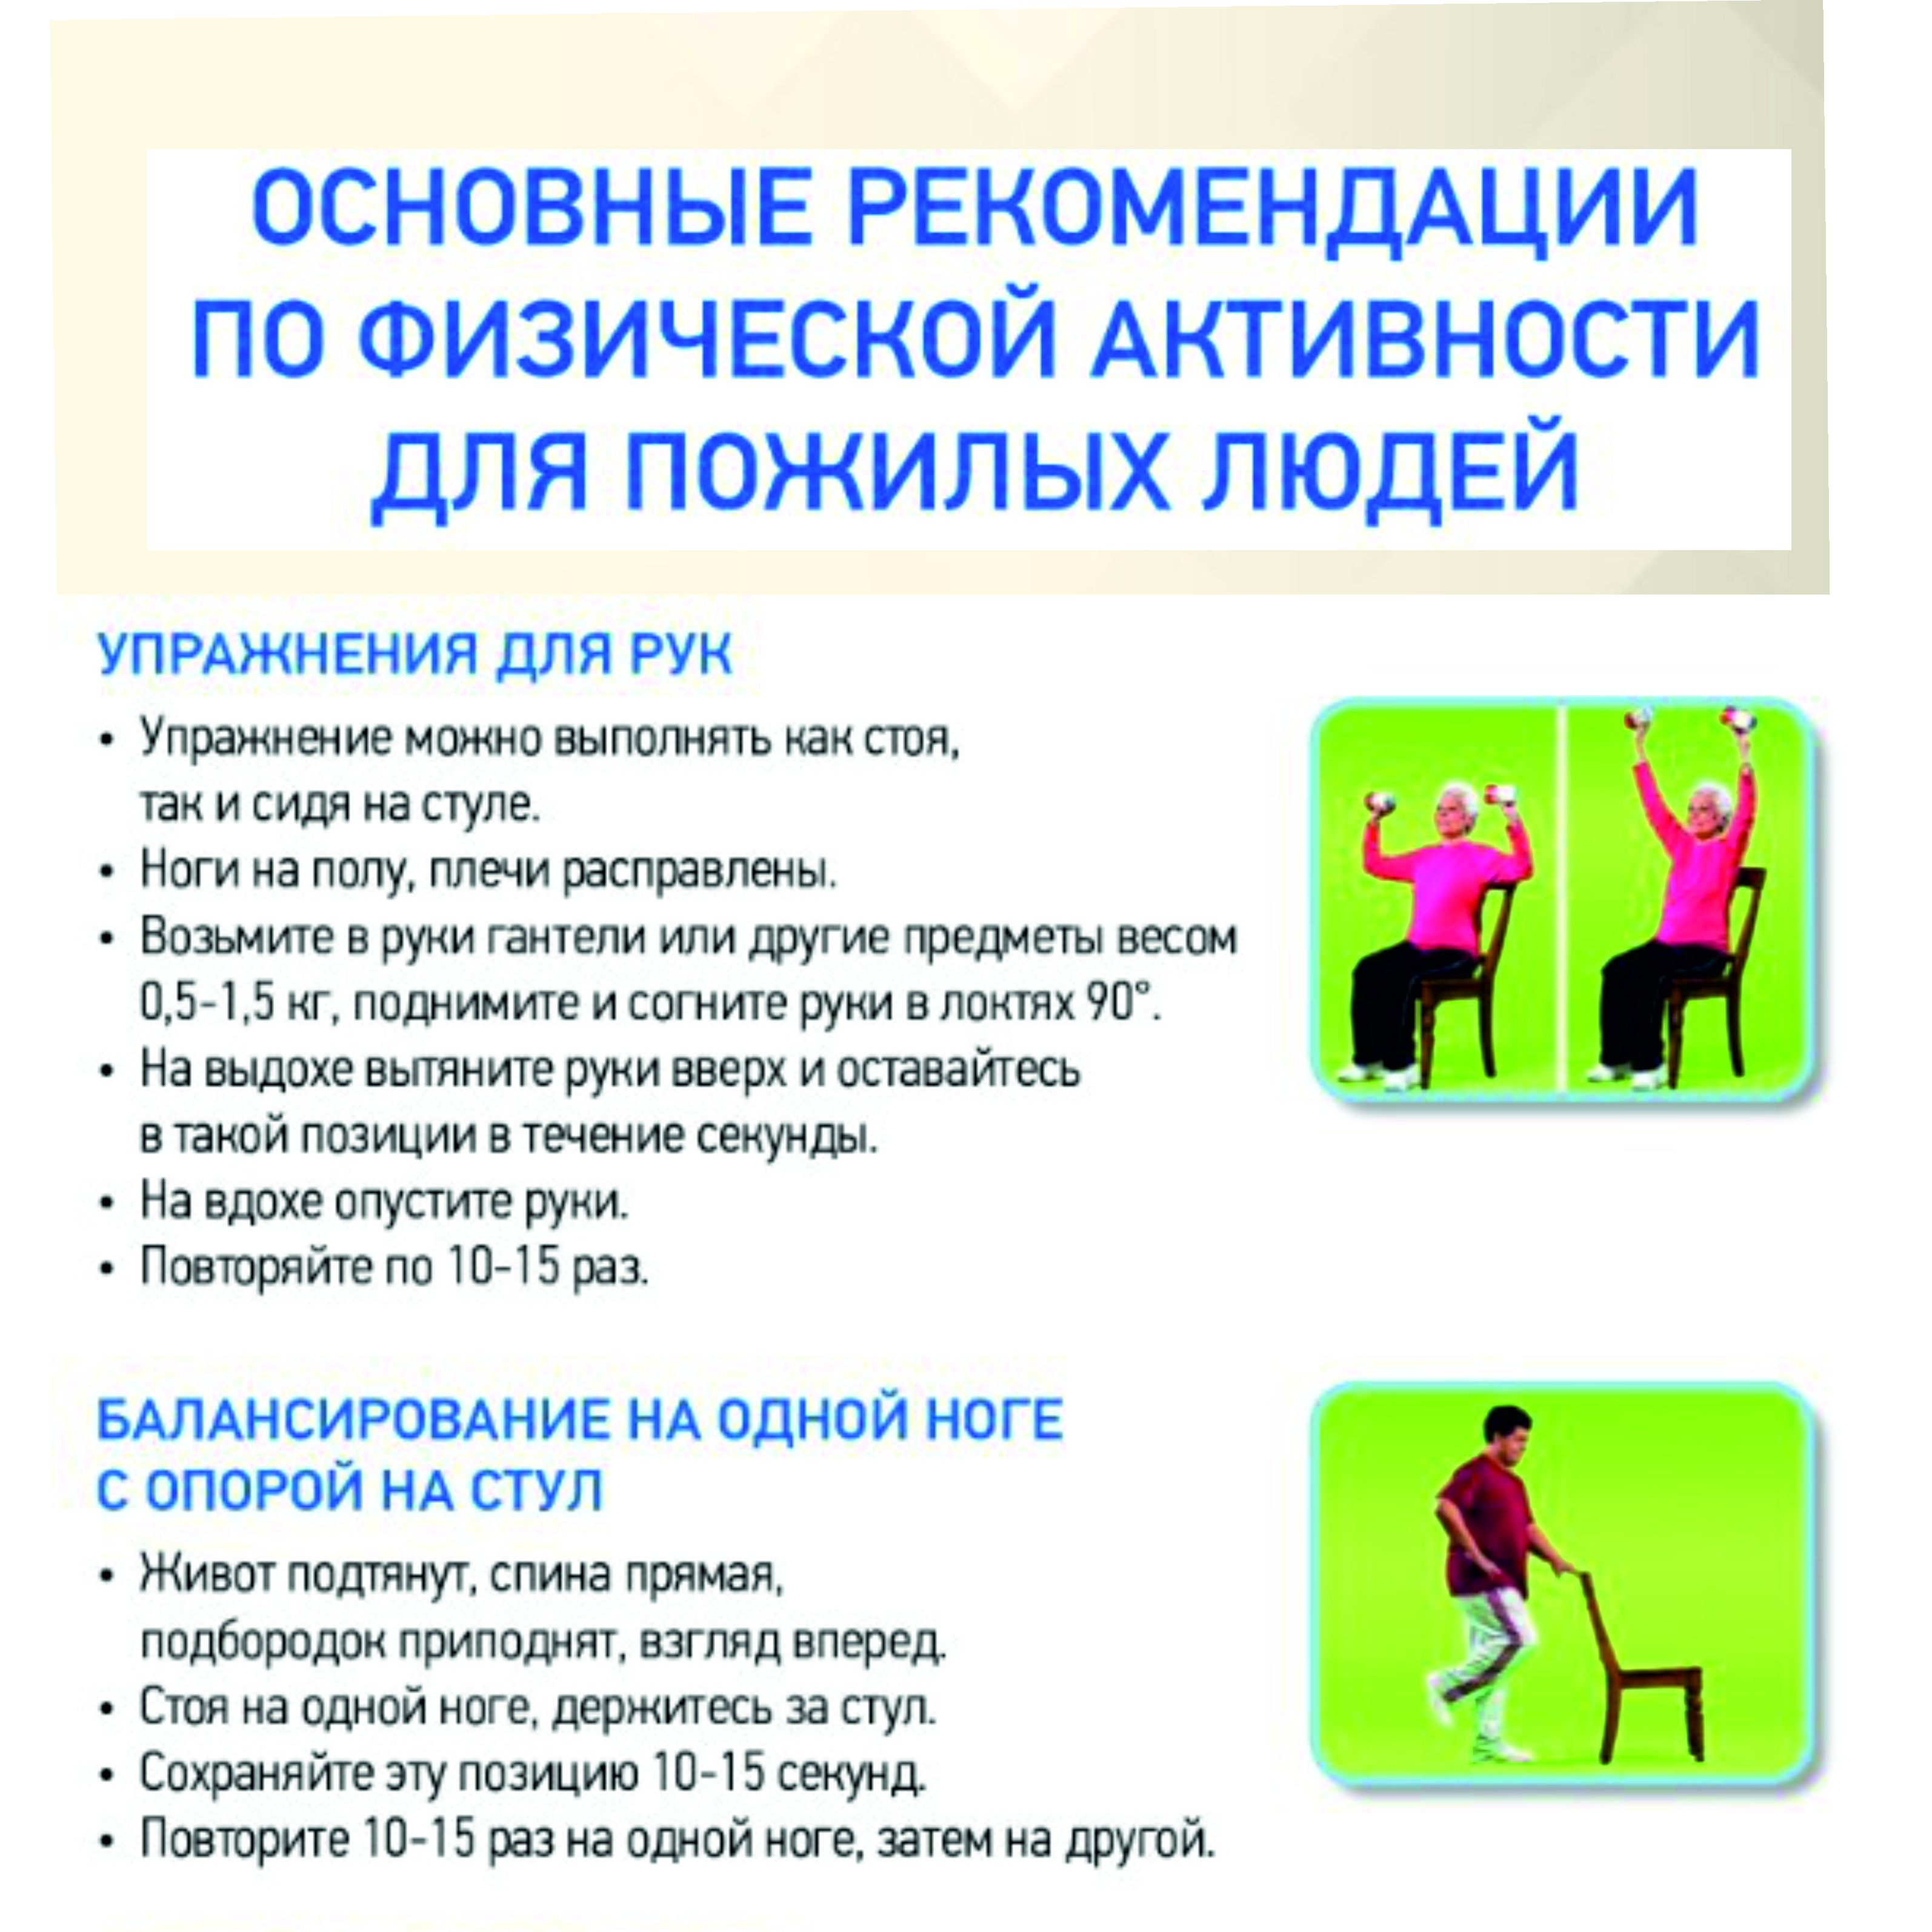 «Основные рекомендации по физической активности»